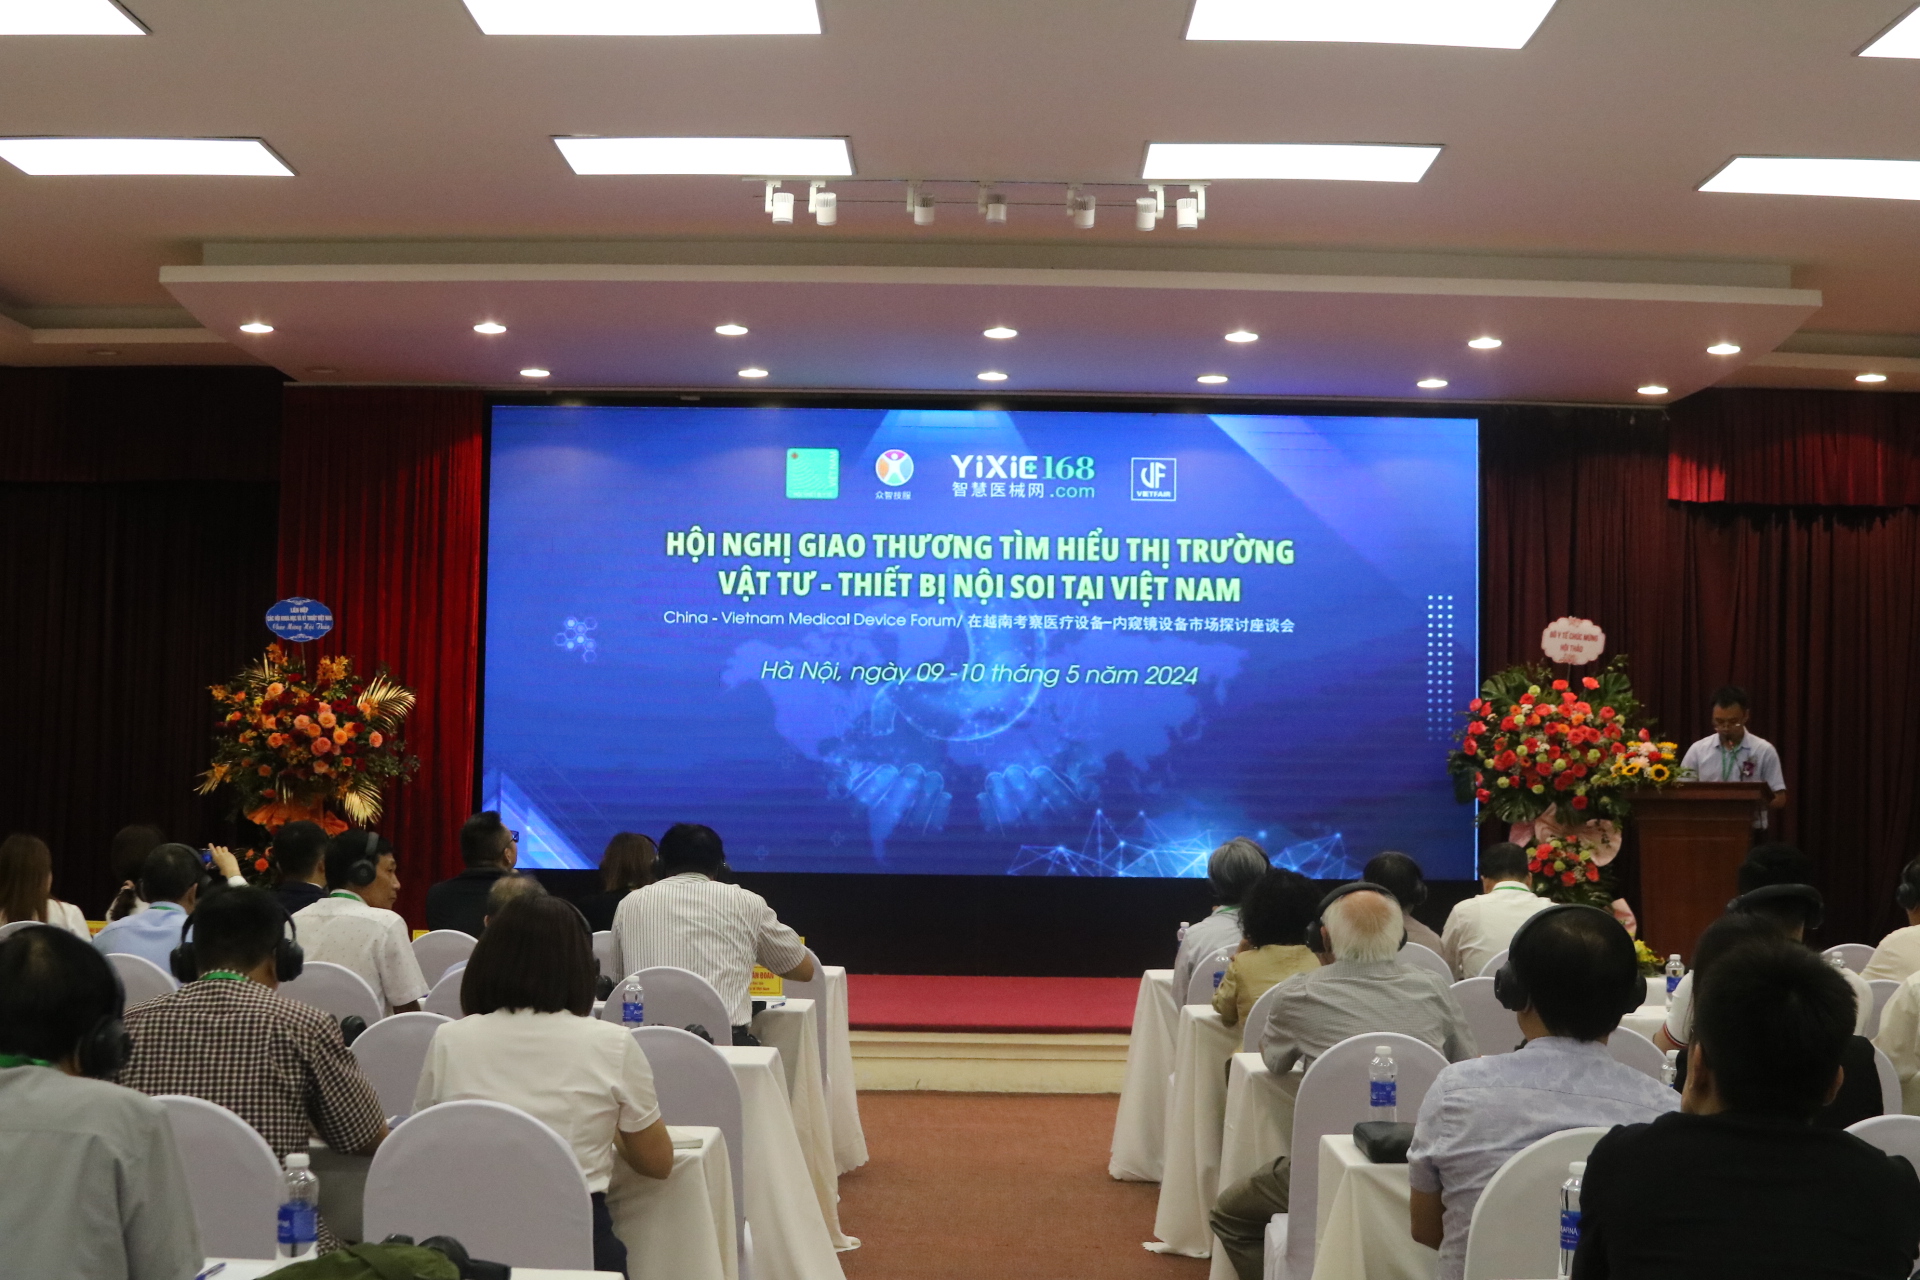 Tích cực trao đổi thương mại, hợp tác song phương và đa phương trong lĩnh vực Vật tư – Thiết bị Nội soi tại Việt Nam